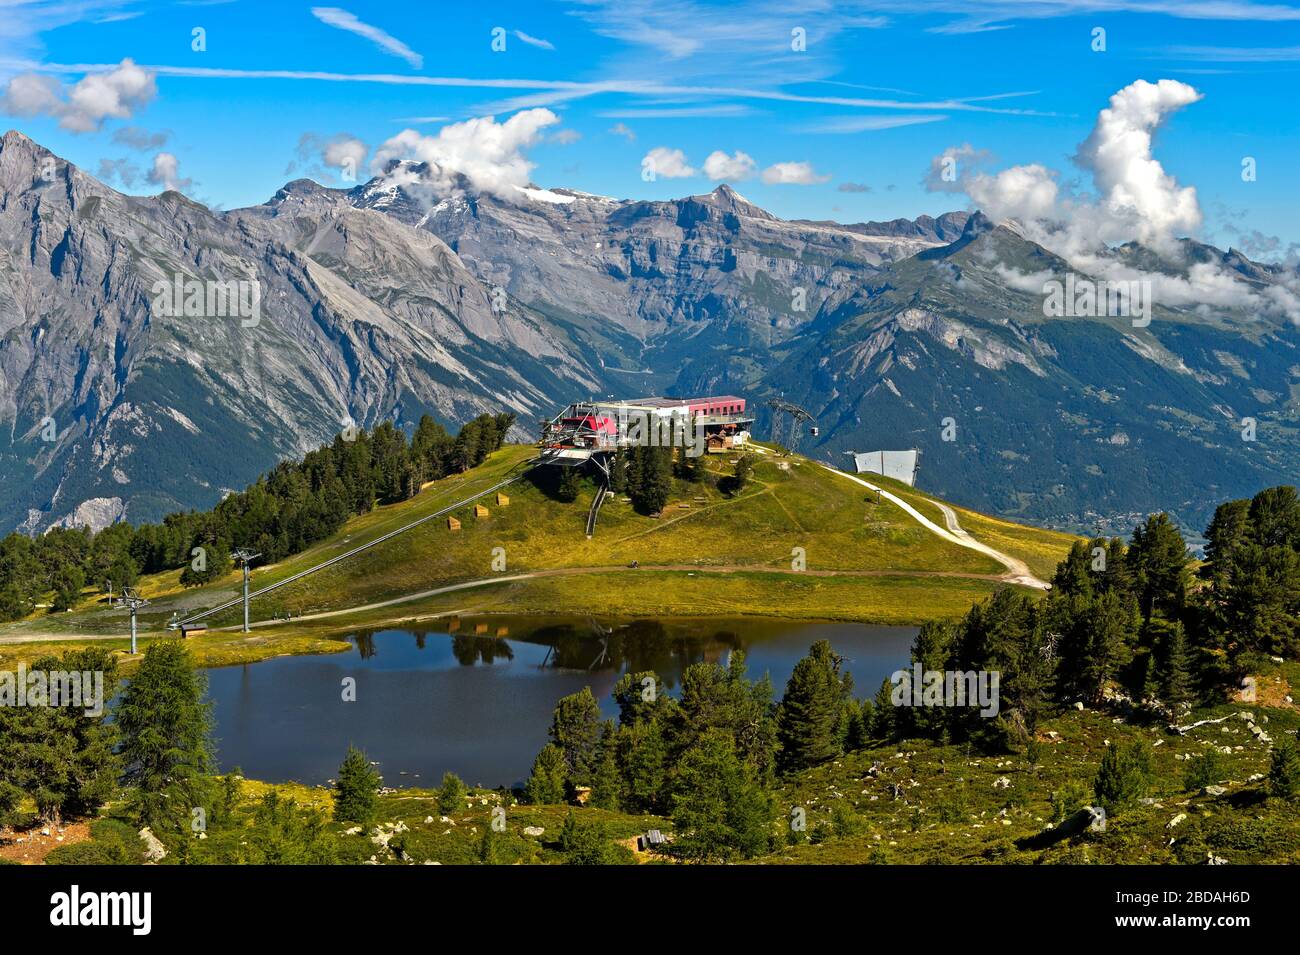 En el lago de montaña Lac de Tracouet en la zona de senderismo Haute-Nendaz, la estación superior del teleférico de Tracouet, Nendaz, Valais, Suiza Foto de stock